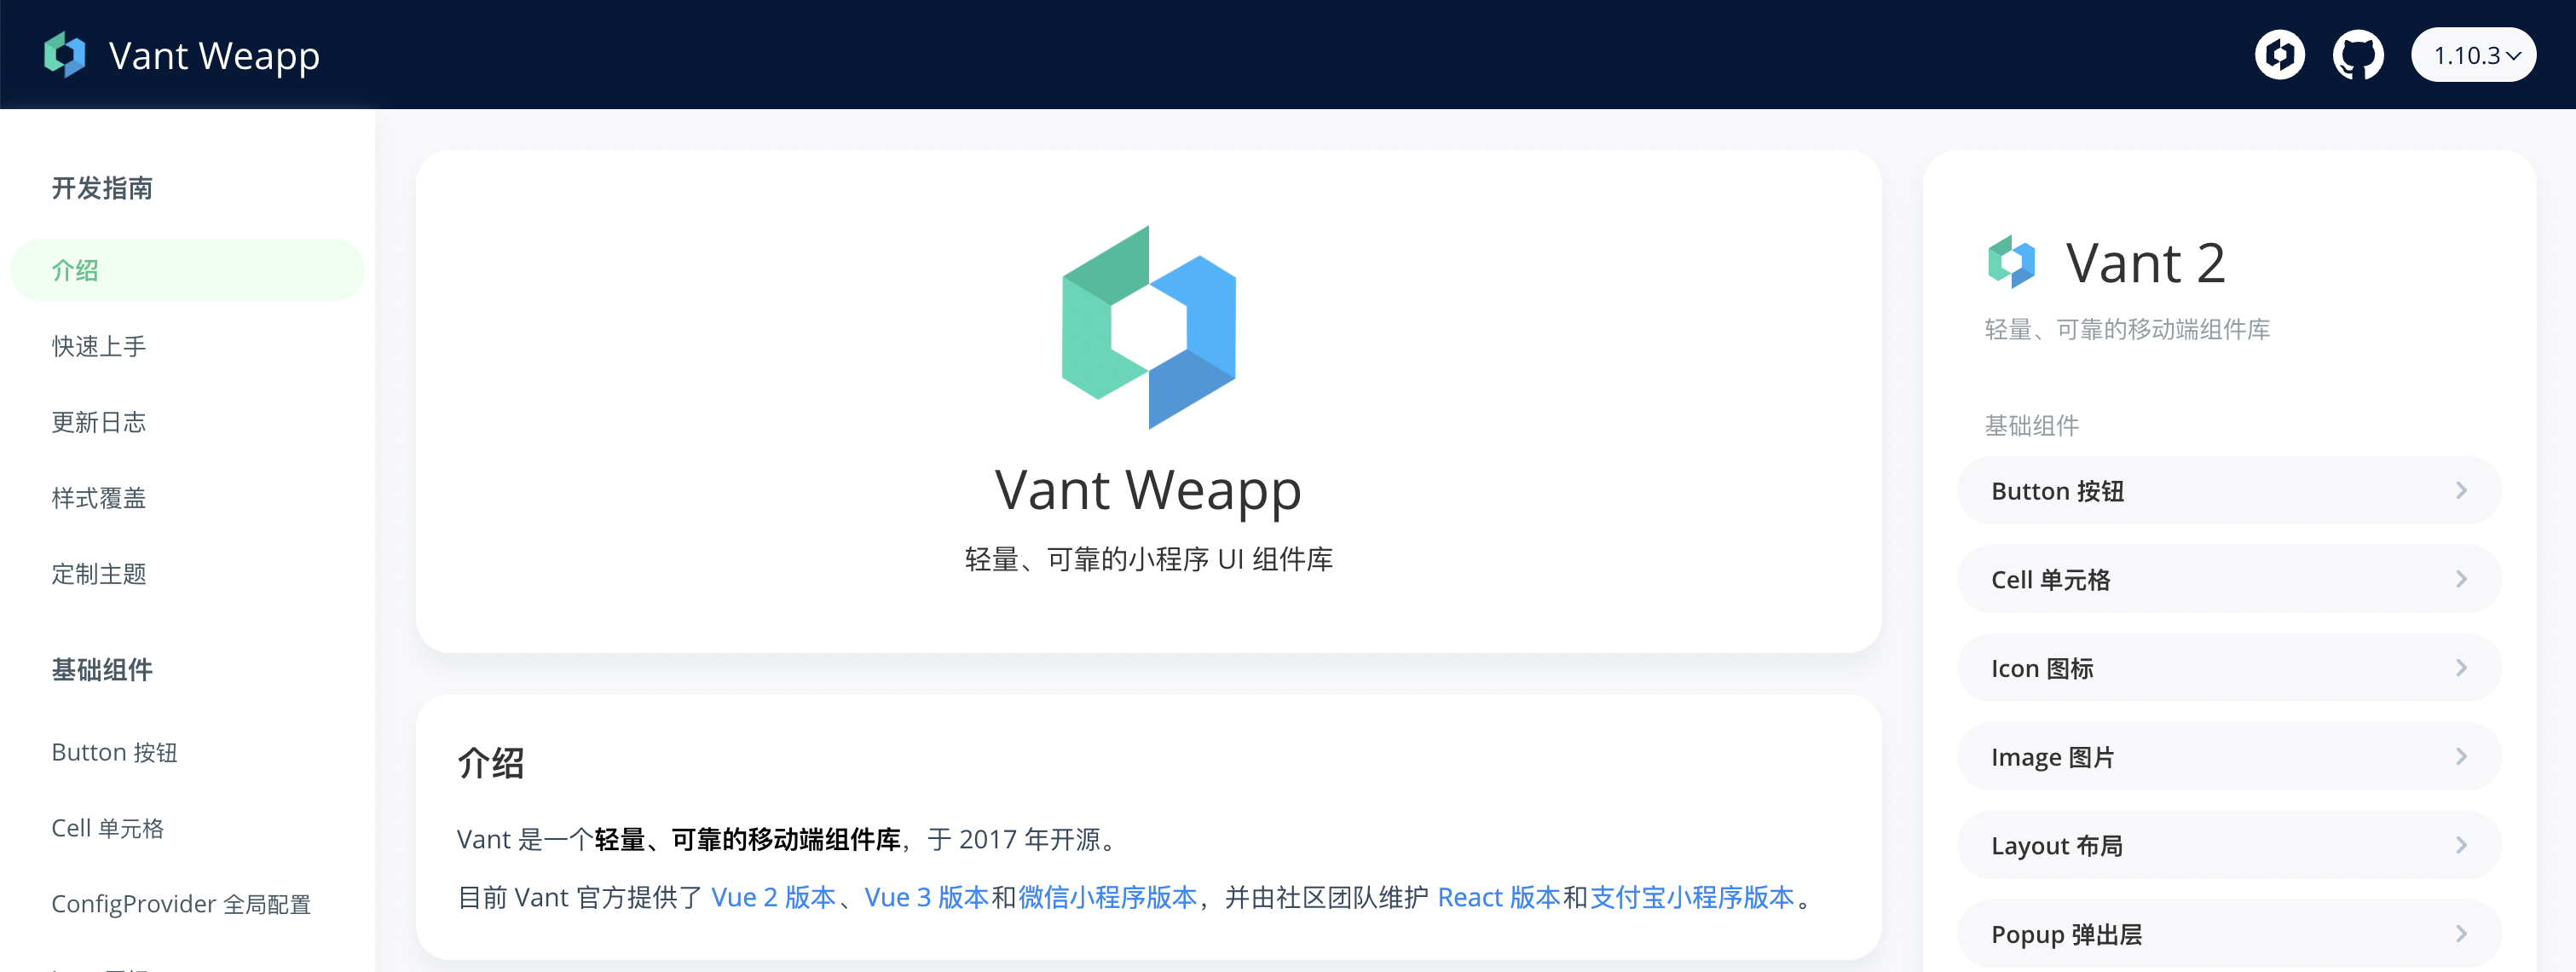 经常用 vant-weapp 开发小程序，却不知道如何开发一个组件？